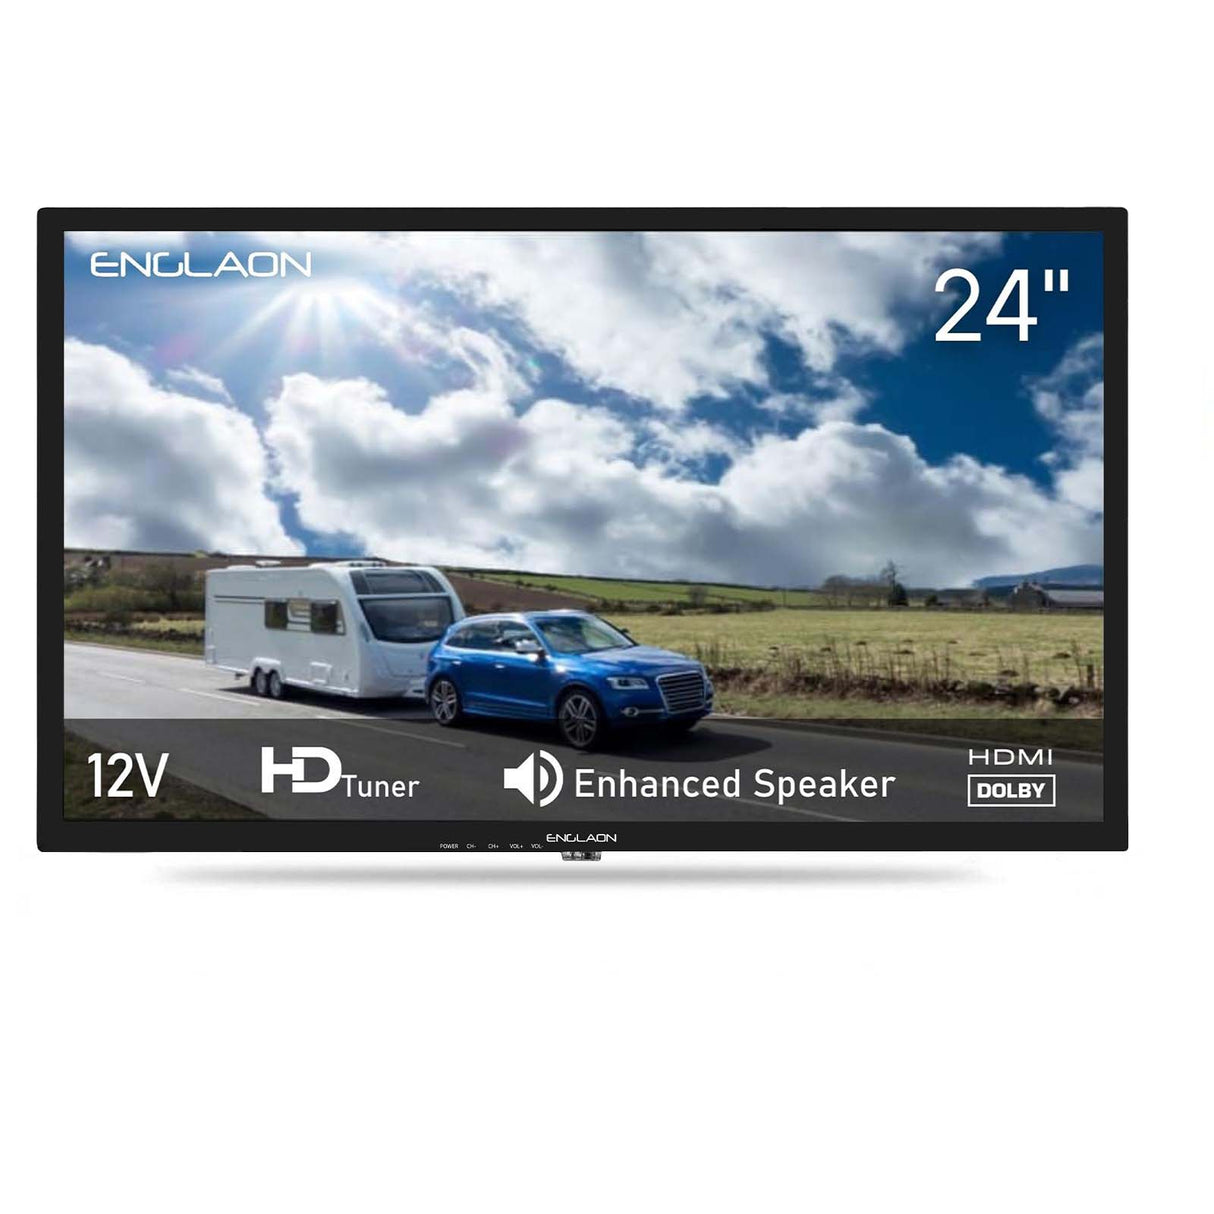 24” 12V HD LED Television for Caravans